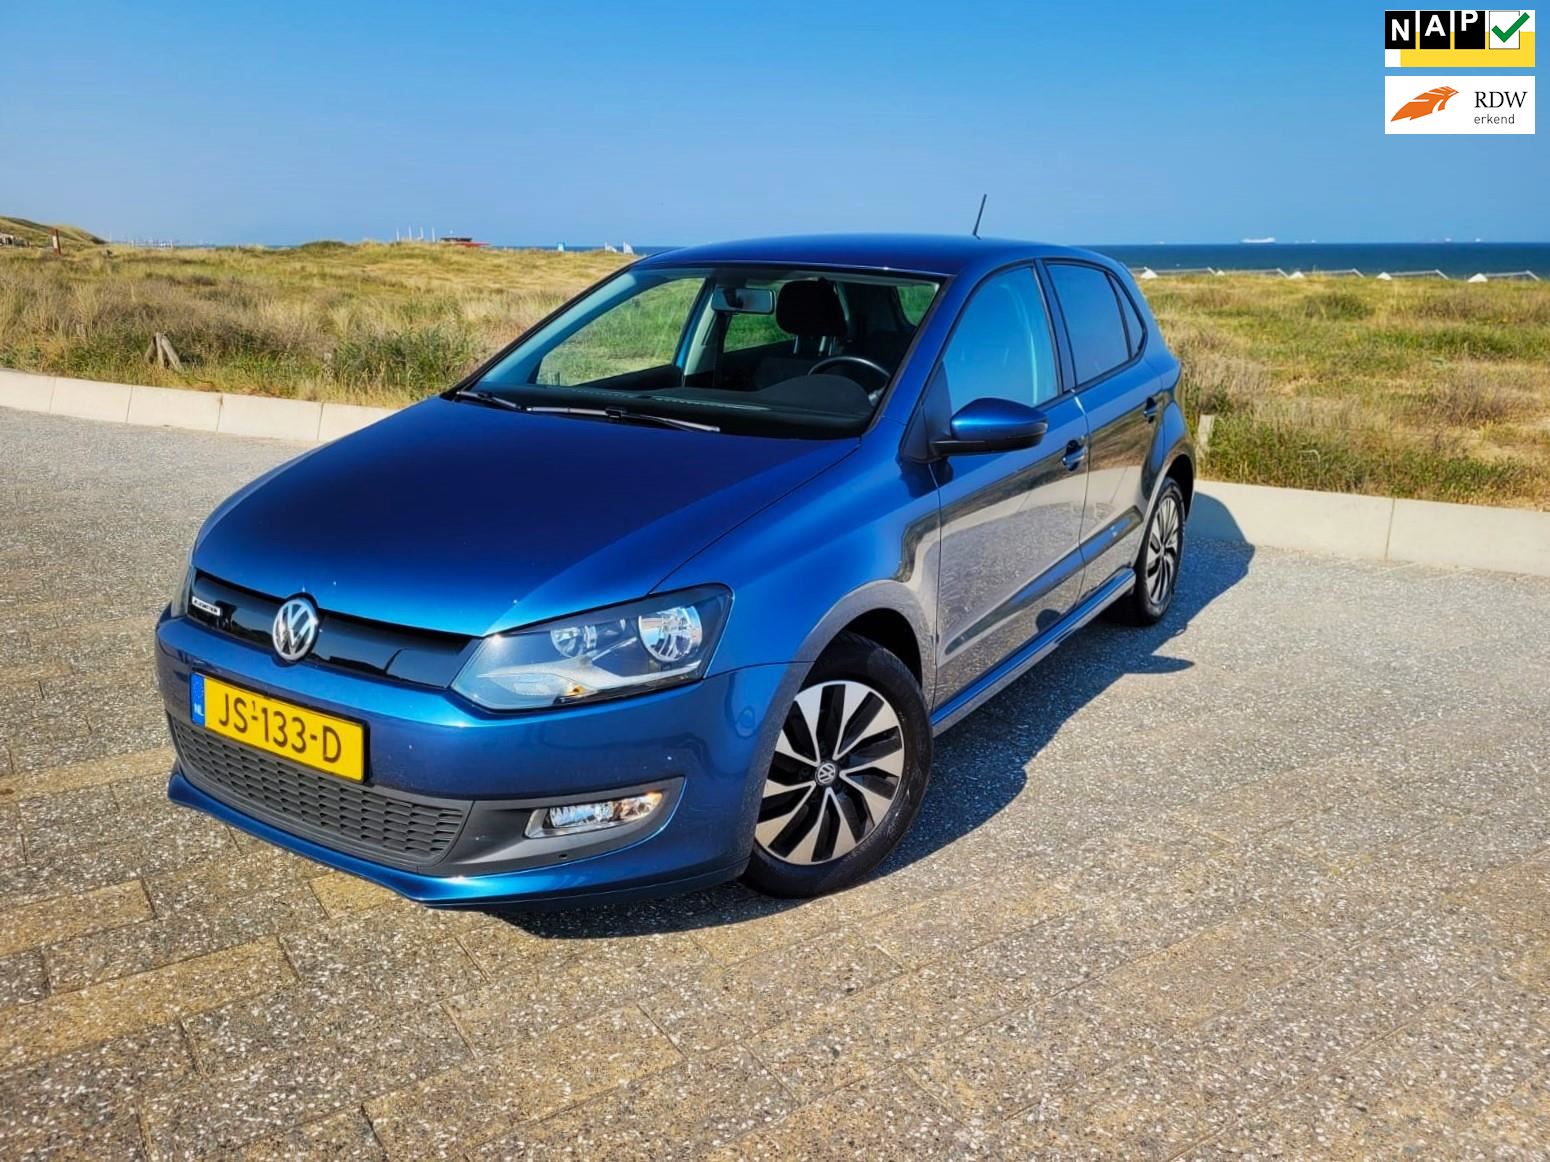 Show Auto Mall Teresina - Volkswagen - Polo - MF 1.6 - 2019 ✔️ Ar  condicionado ✔️ Banco com regulagem de altura ✔️ Desembaçador traseiro ✔️  Encosto de cabeça traseiro ✔️ Farol